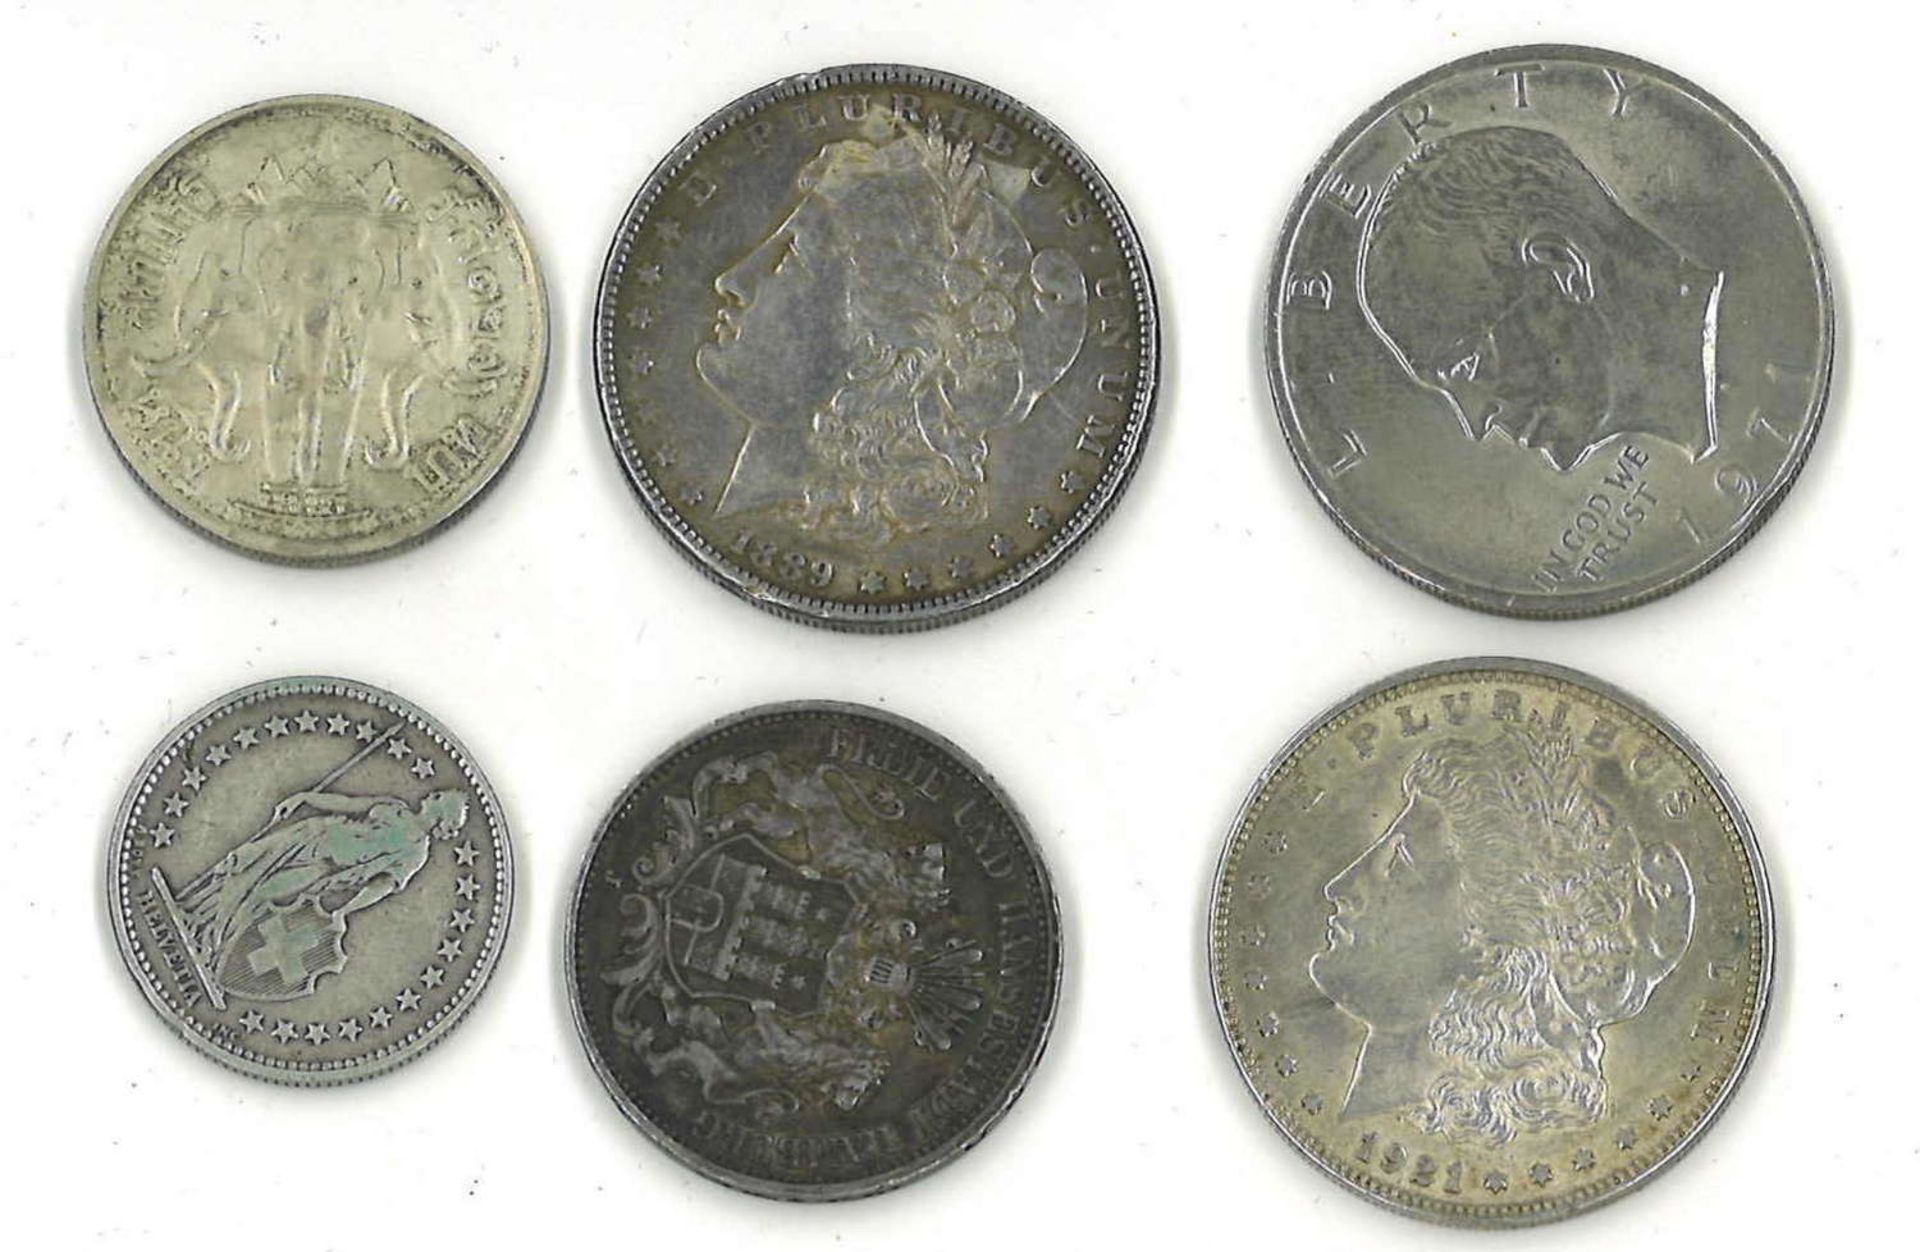 kleines Lot Münzen, dabei Silber, z.Bsp. 1 Dollar 1889, 1 Dollar 1921, 3 Mark Hamburg 1909, etc. - Image 2 of 2